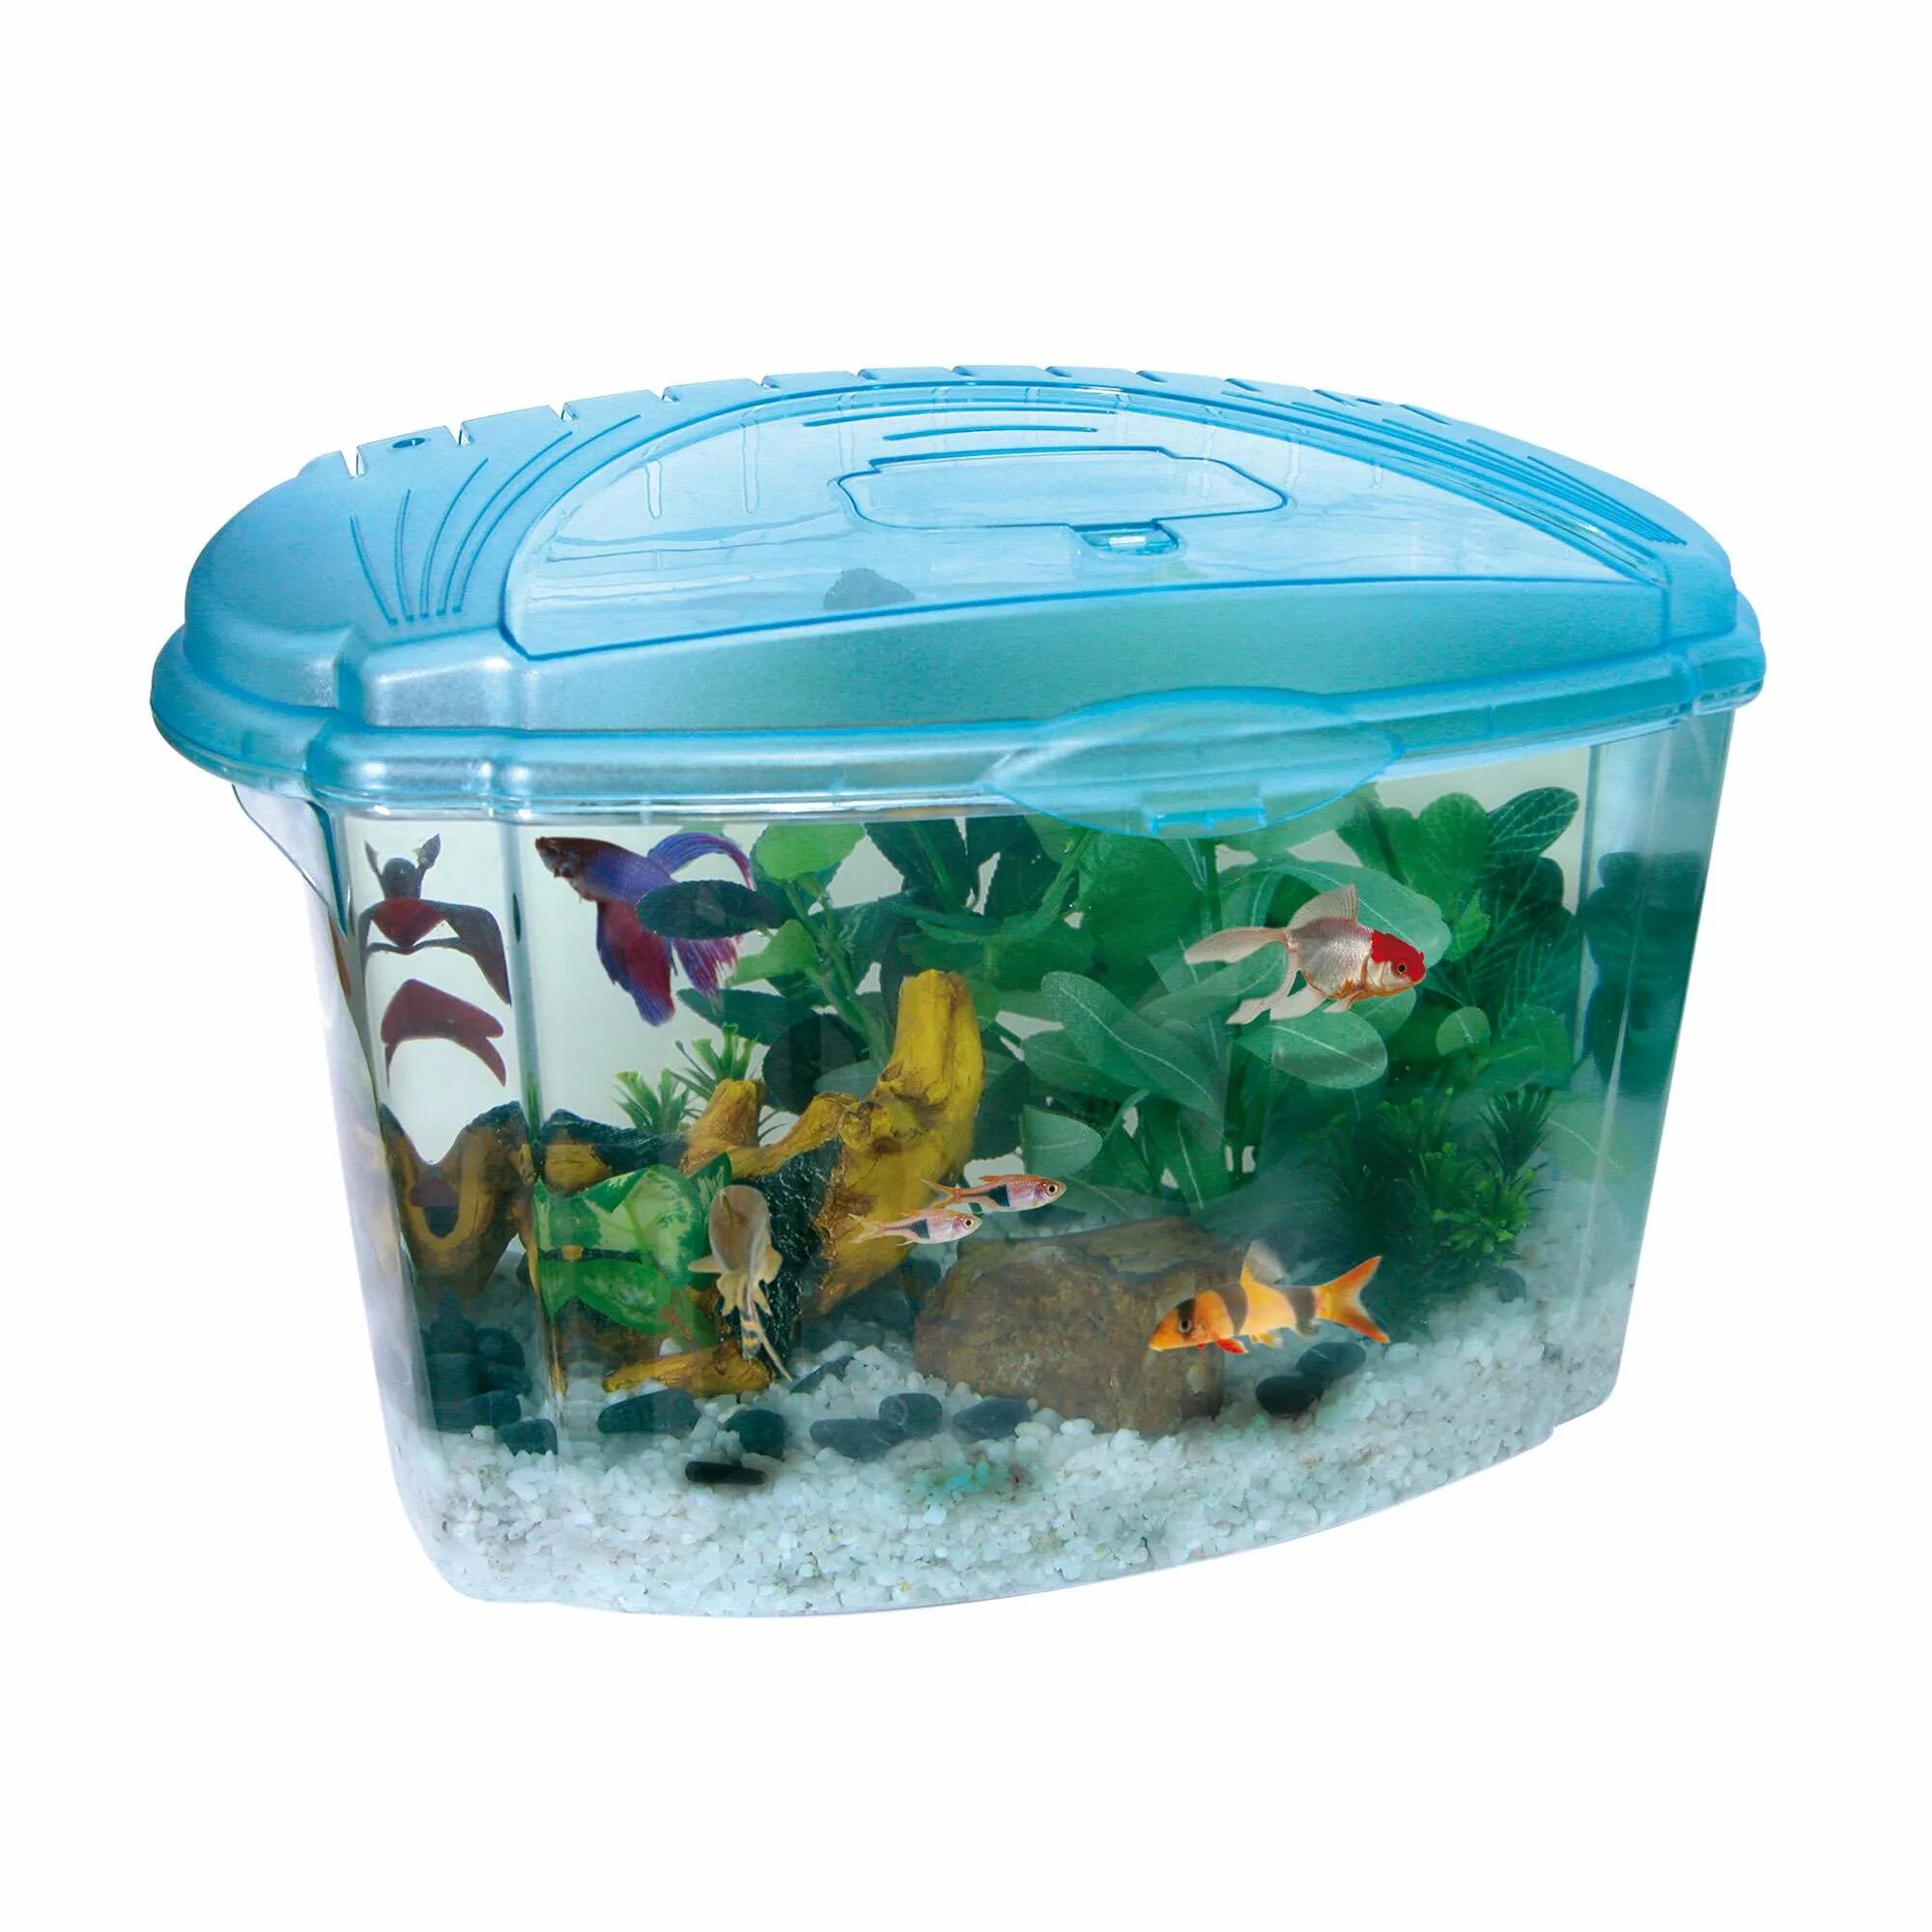 Купить рыбок в новосибирске. Daquarium 5л (17x17x17). Пластмассовый аквариум. Рыбки для аквариума. Пластиковые аквариумы для рыб.